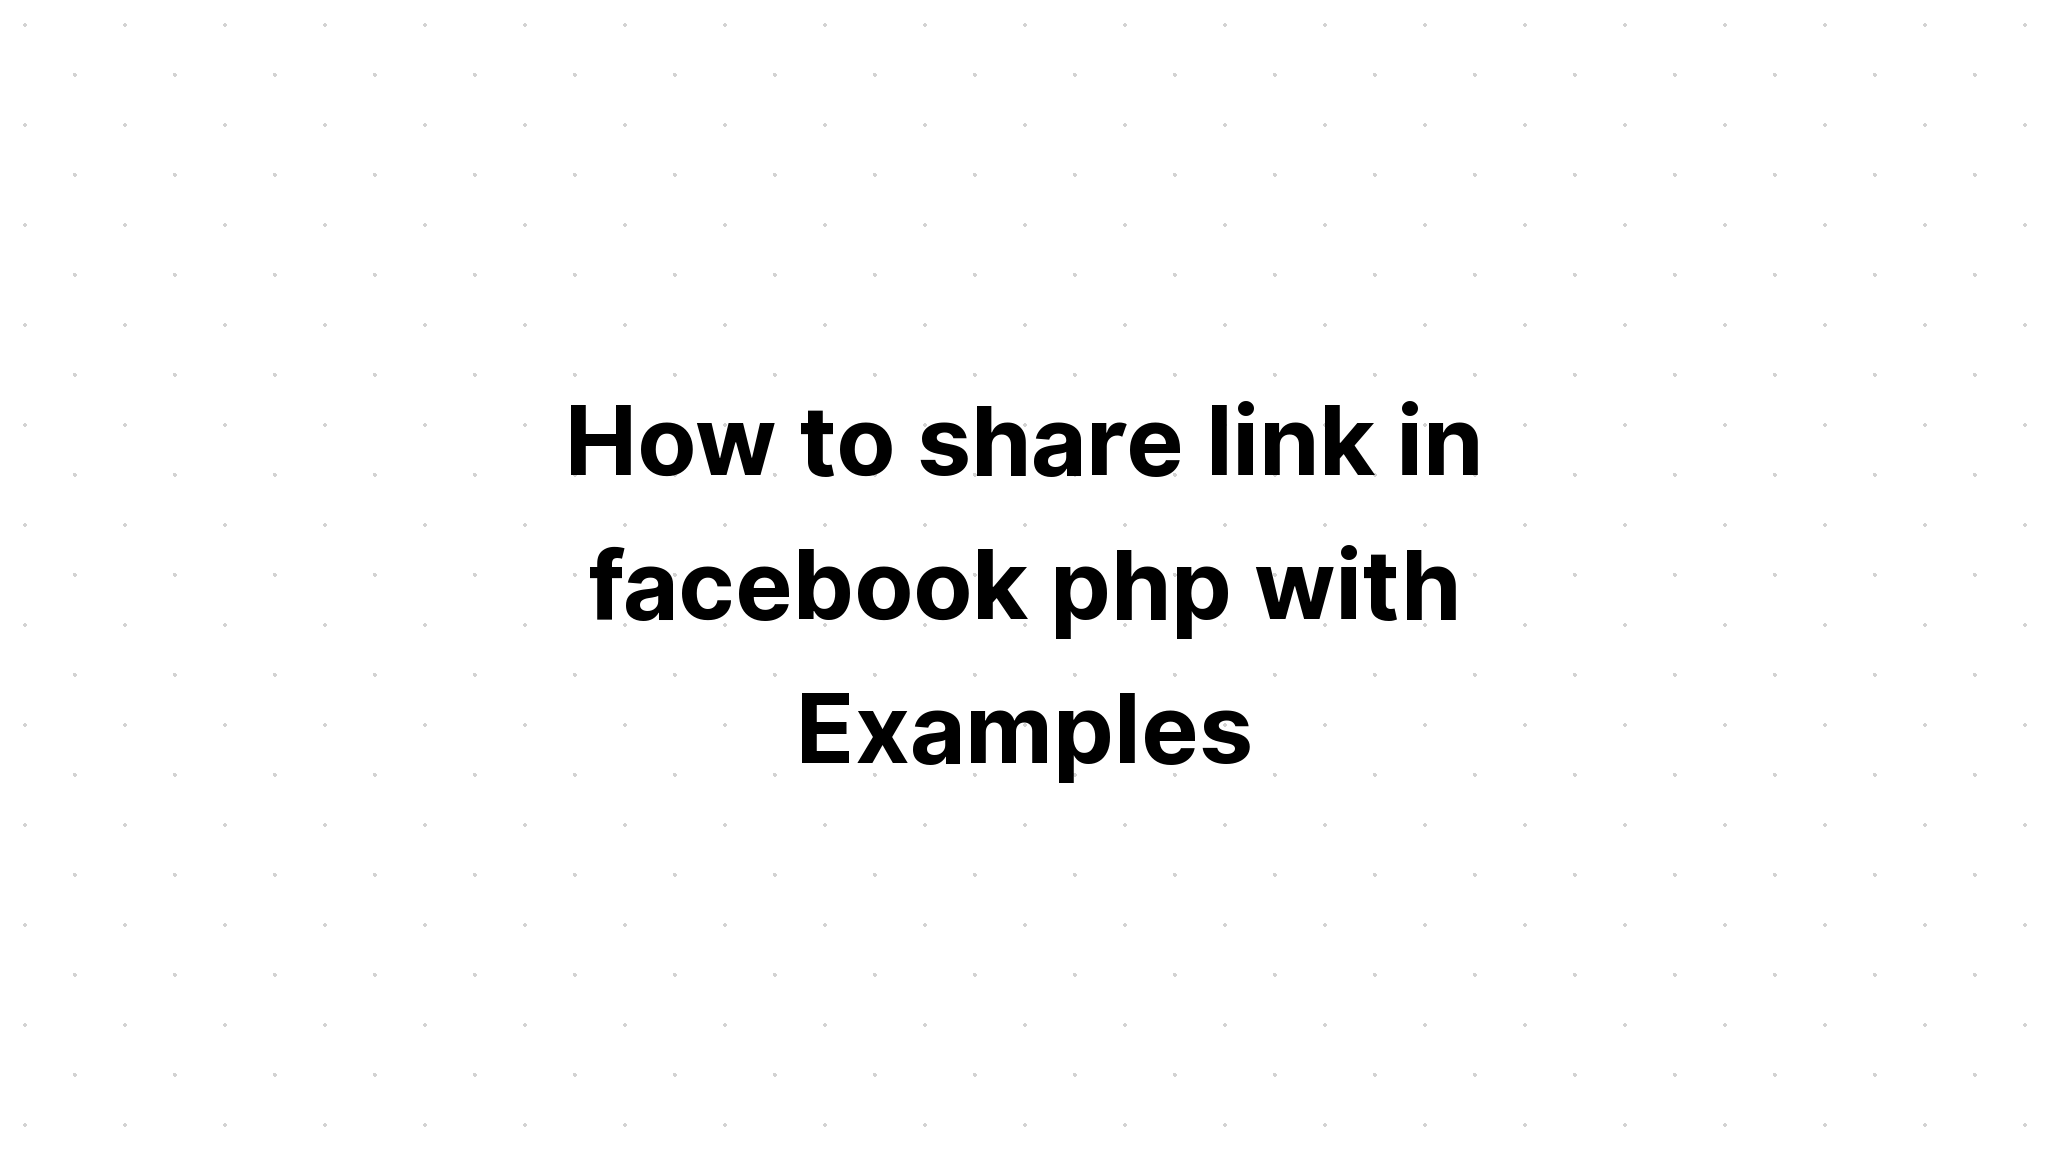 Cách chia sẻ liên kết trong facebook php với các ví dụ